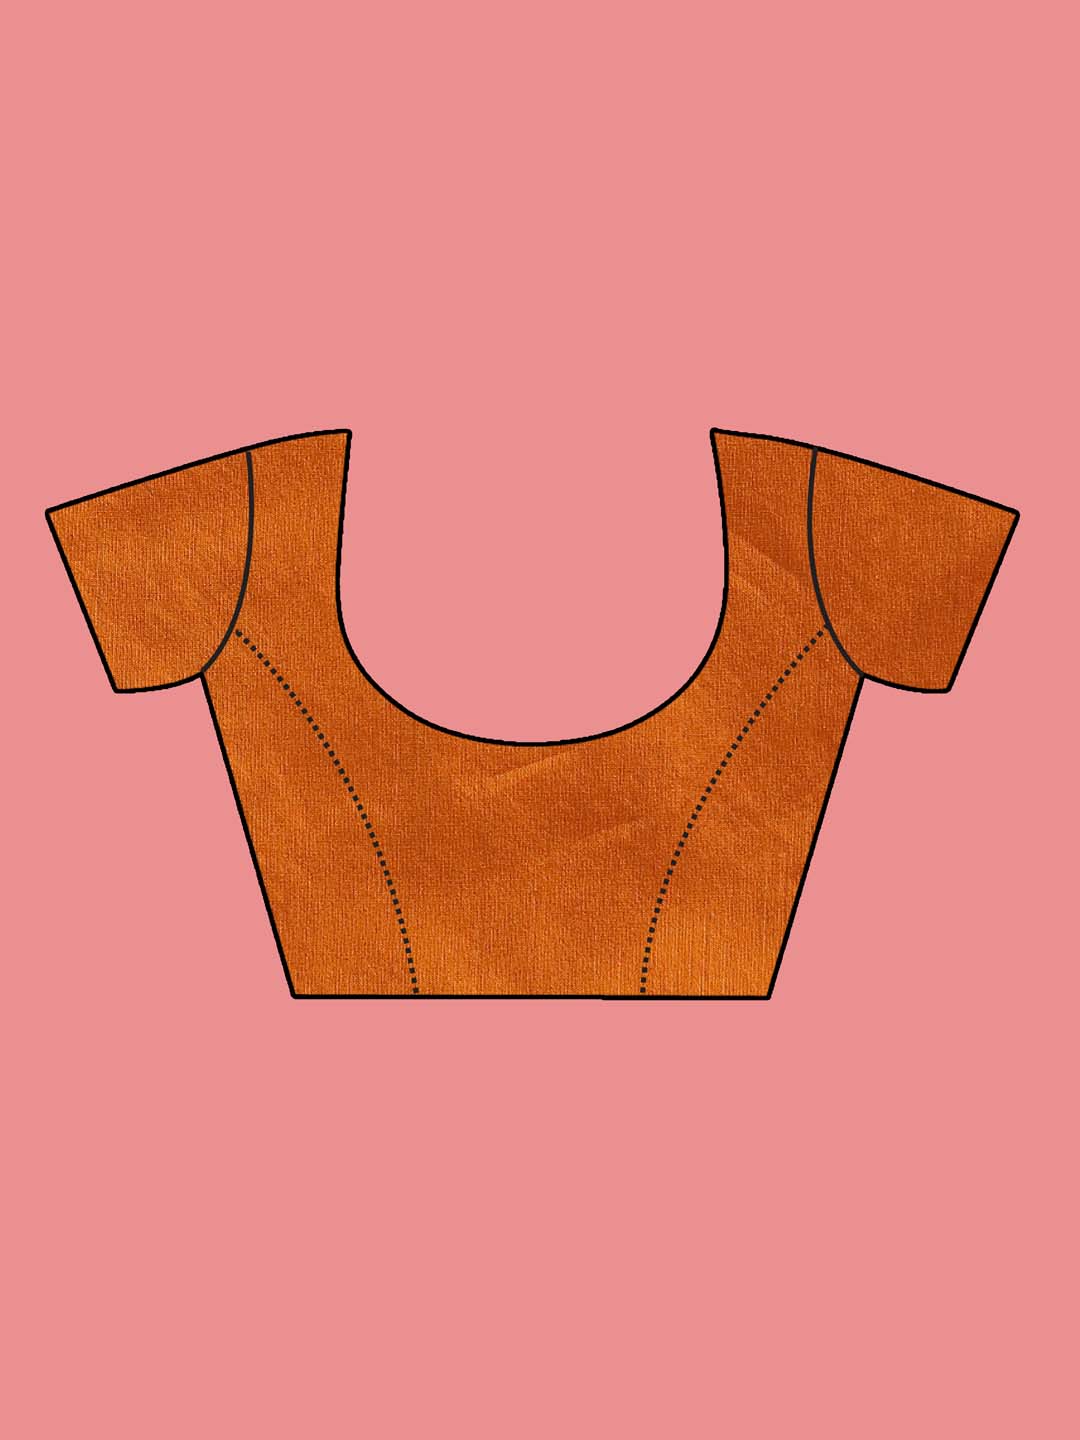 Indethnic Brown Pochampally Kora Silk by Cotton Saree - Blouse Piece View